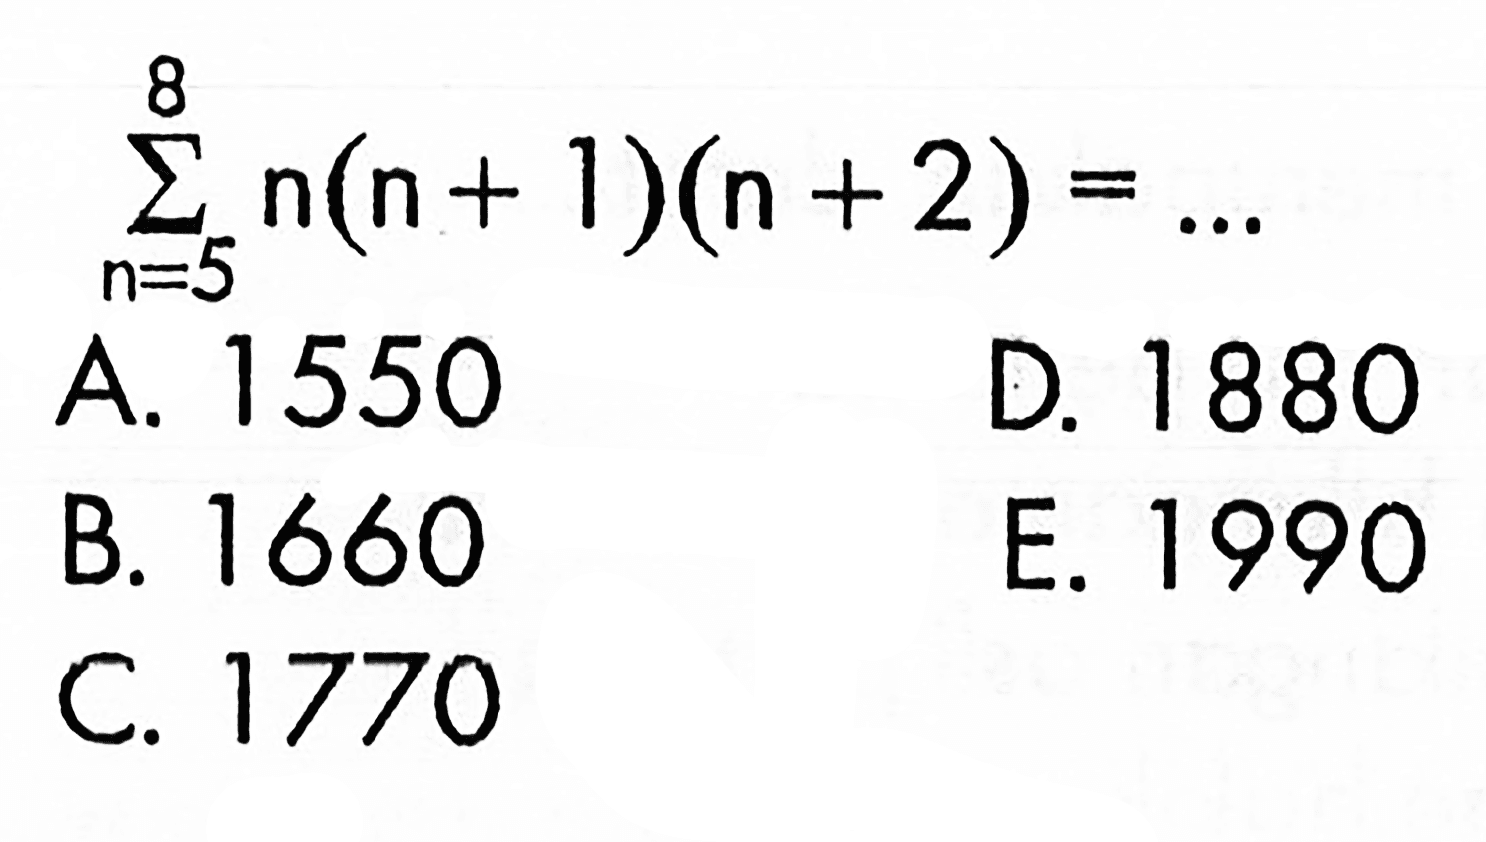 sigma n=5 8 n(n + 1)(n +2)= 